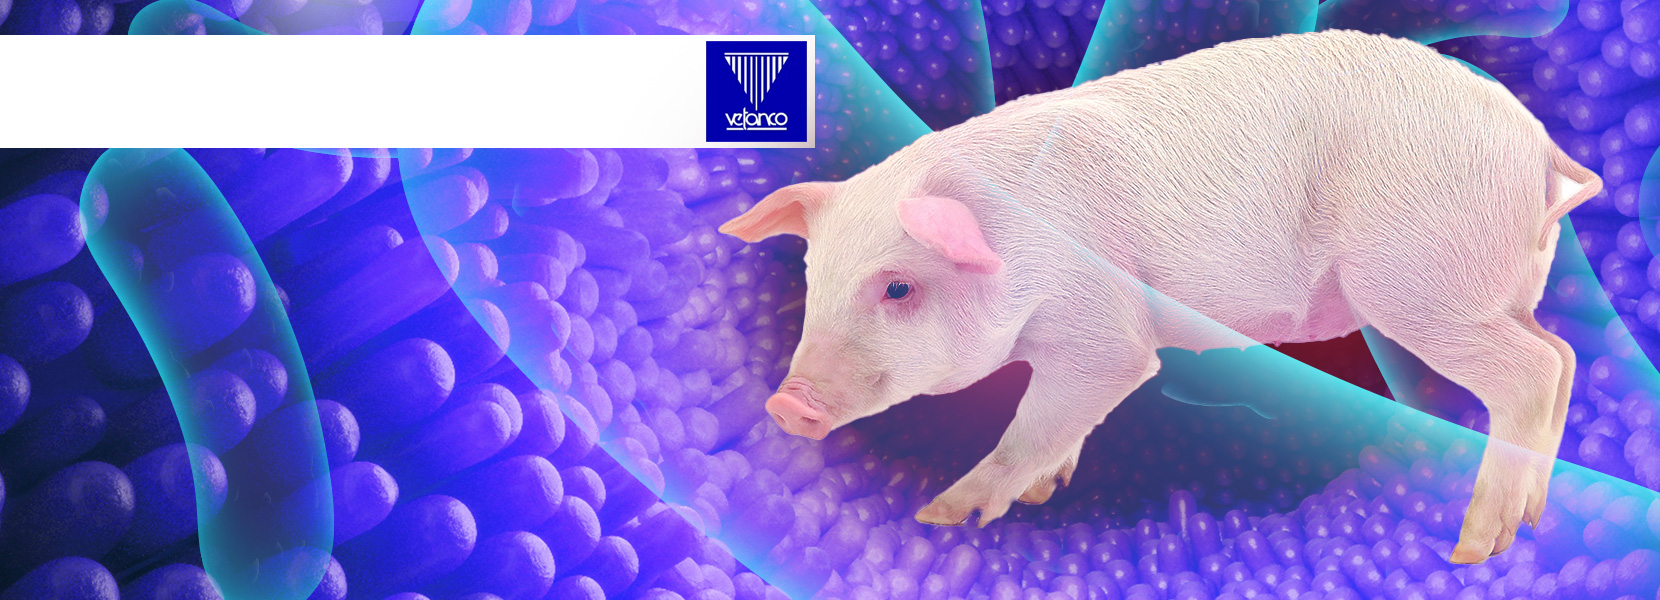 Alternativas al uso de antimicrobianos en producción porcina